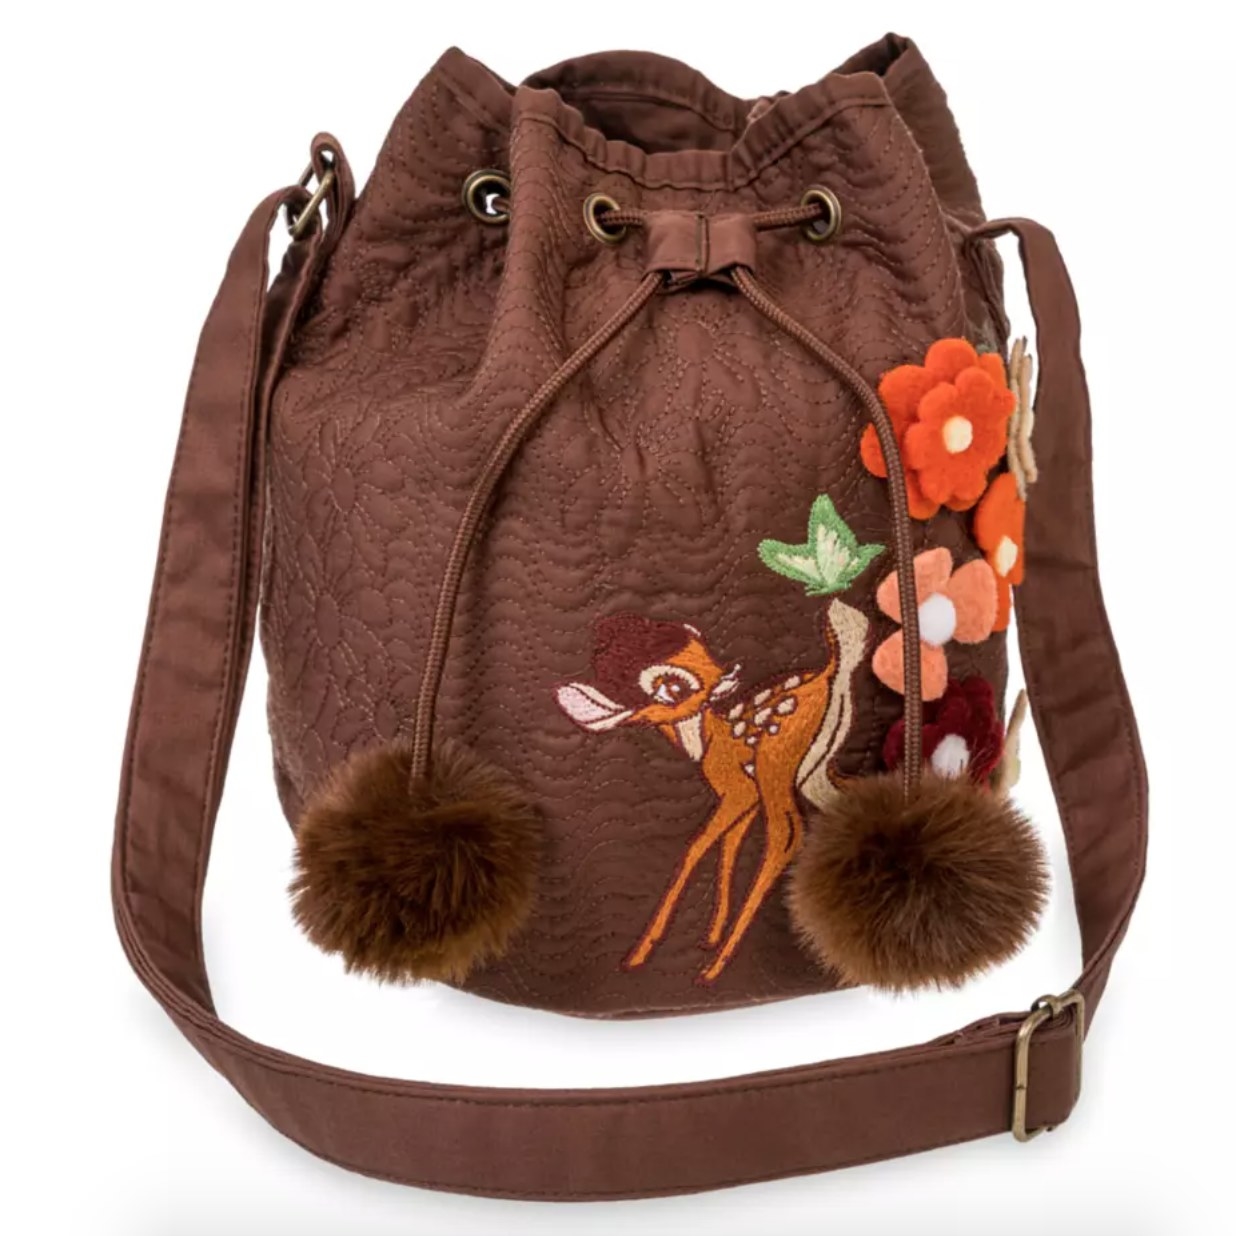 the brown bambi bag